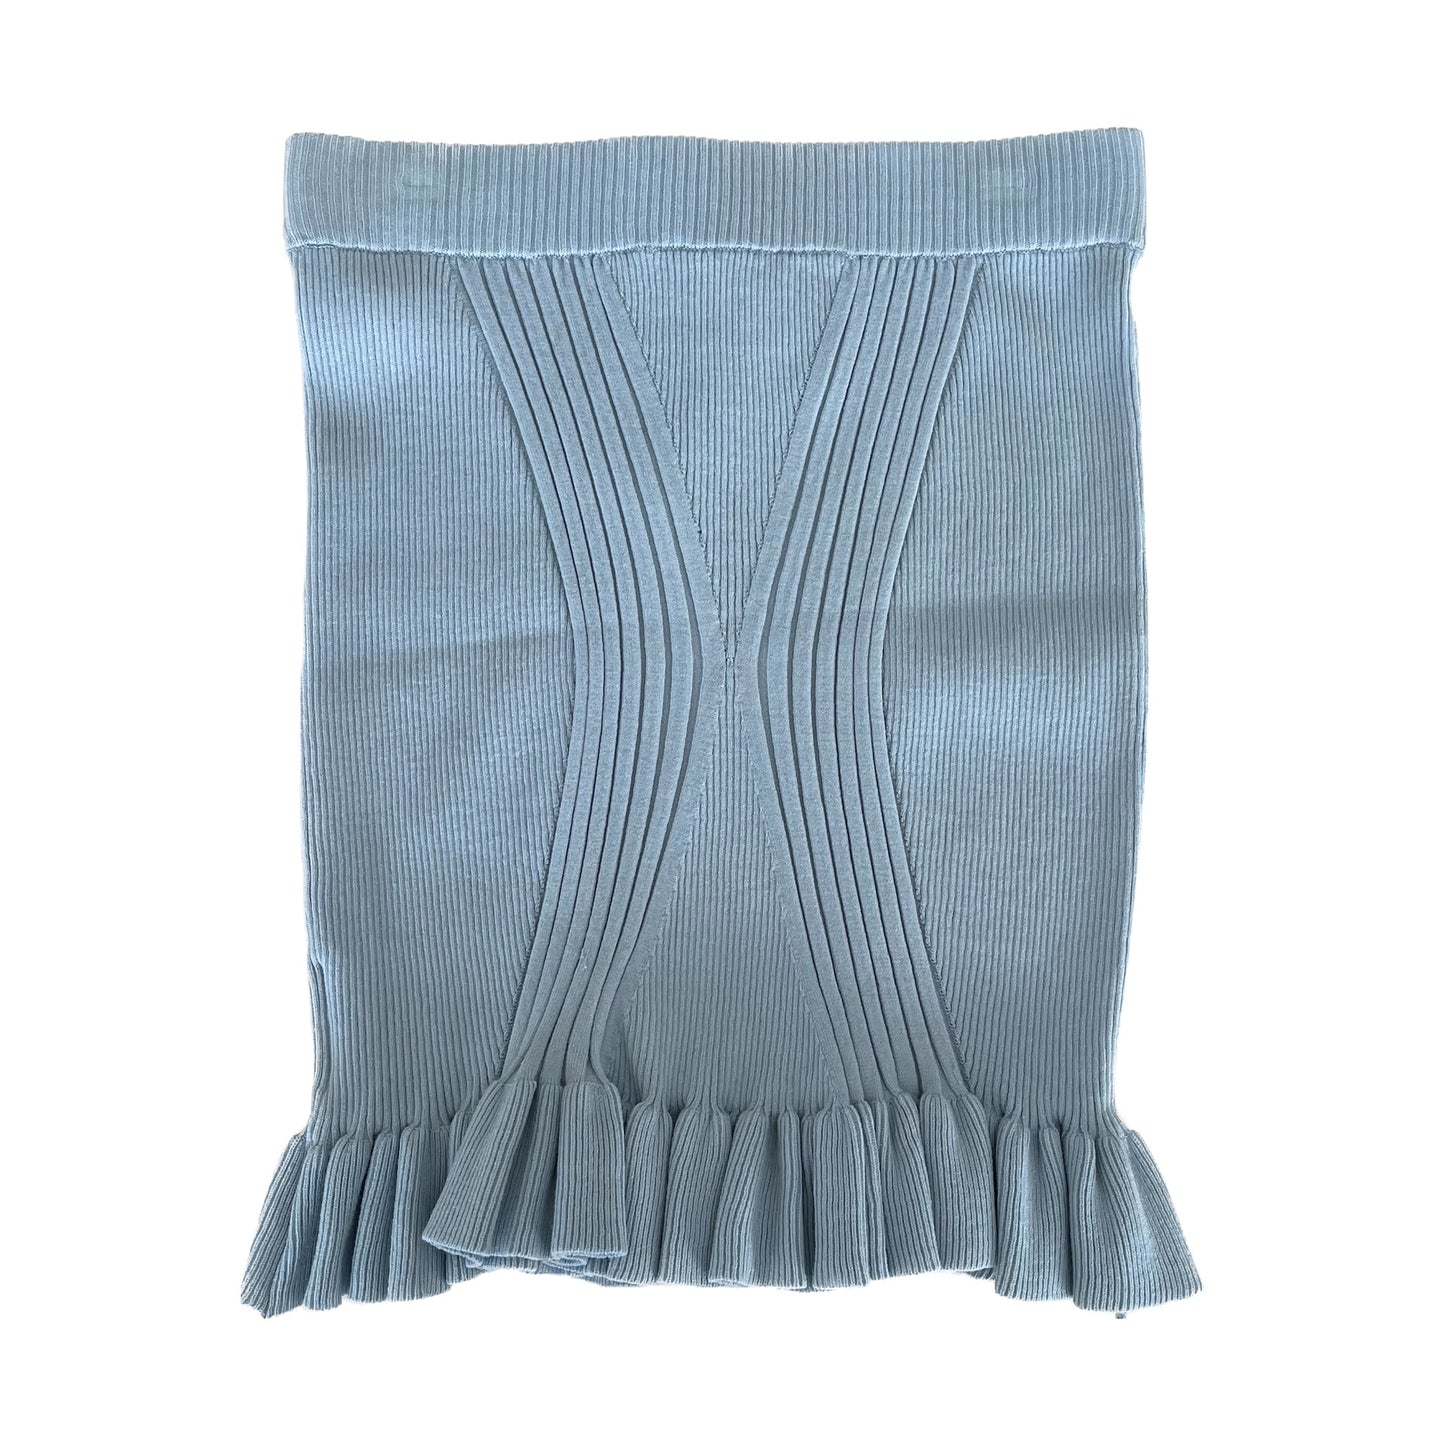 X Skirt / Aqua blue / リブニットスカート